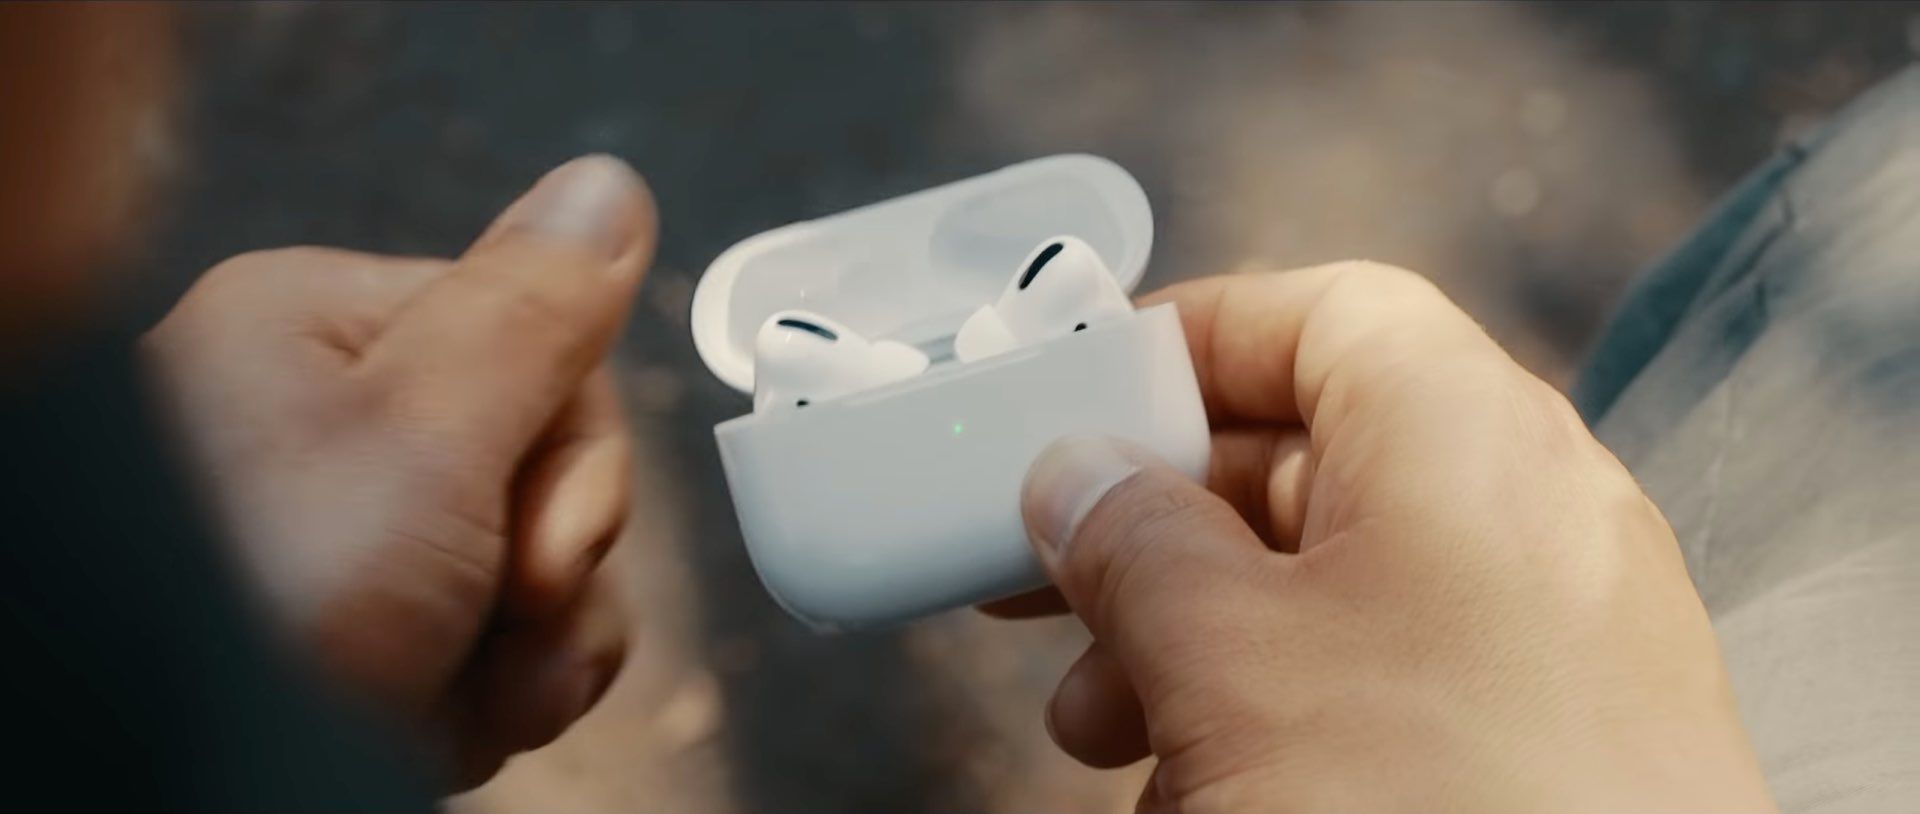 ภาพนิ่งจากโฆษณาของ Apple กำลังแสดงคุณ มือของผู้ชายถือเคสชาร์จ AirPods Pro ที่เปิดอยู่พร้อมหูฟังเอียร์บัดอยู่ข้างใน